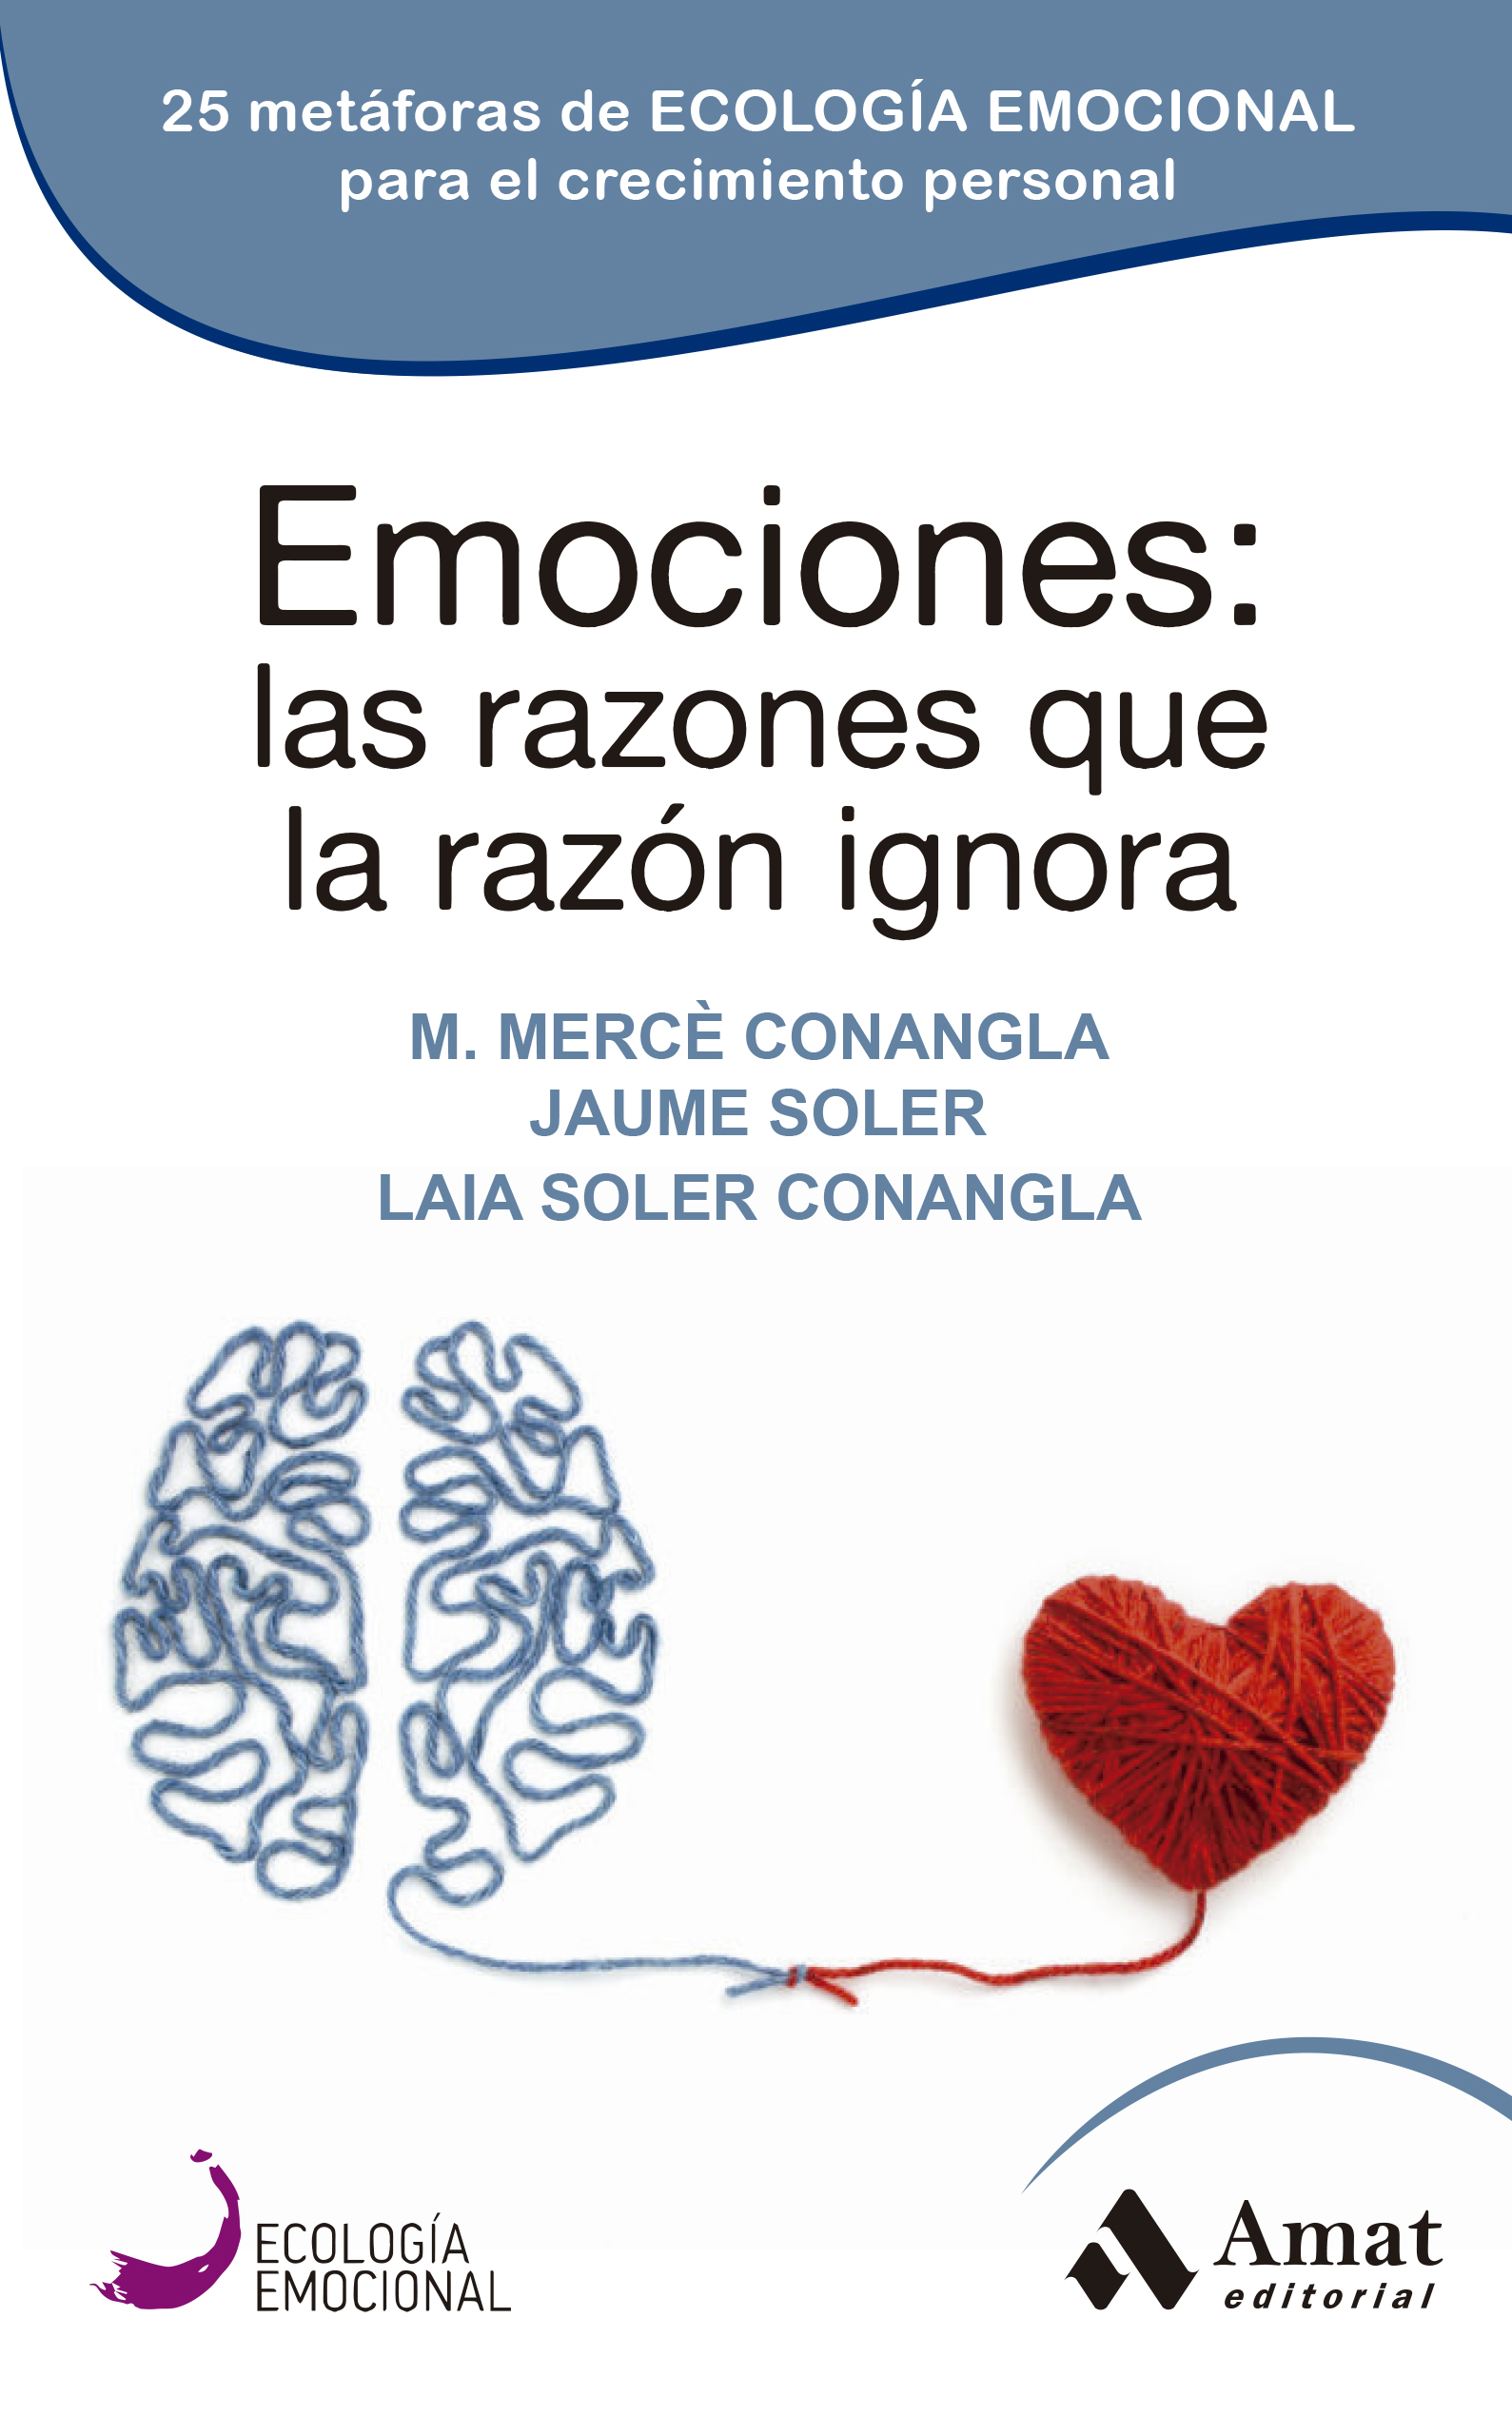 Emociones: las razones que la razón ignora | M. Mercè Conangla | Libros para vivir mejor